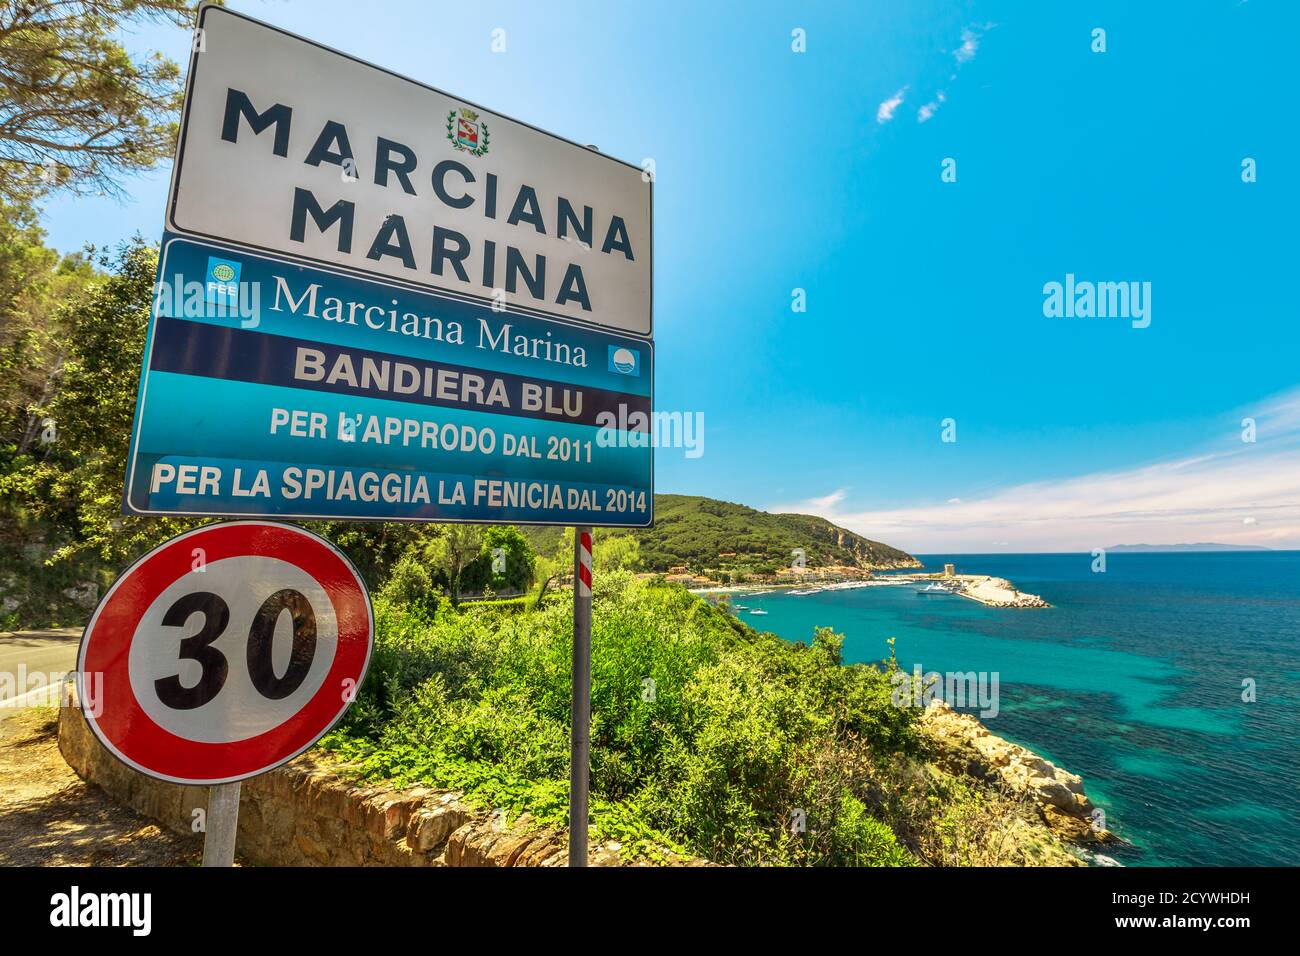 Marciana Marina, Isola d'Elba - 18 giugno 2020: Cartello di benvenuto Marciana Marina Bandiera Blu per la spiaggia di la Fenicia e Approdo. Località turistica famosa Foto Stock